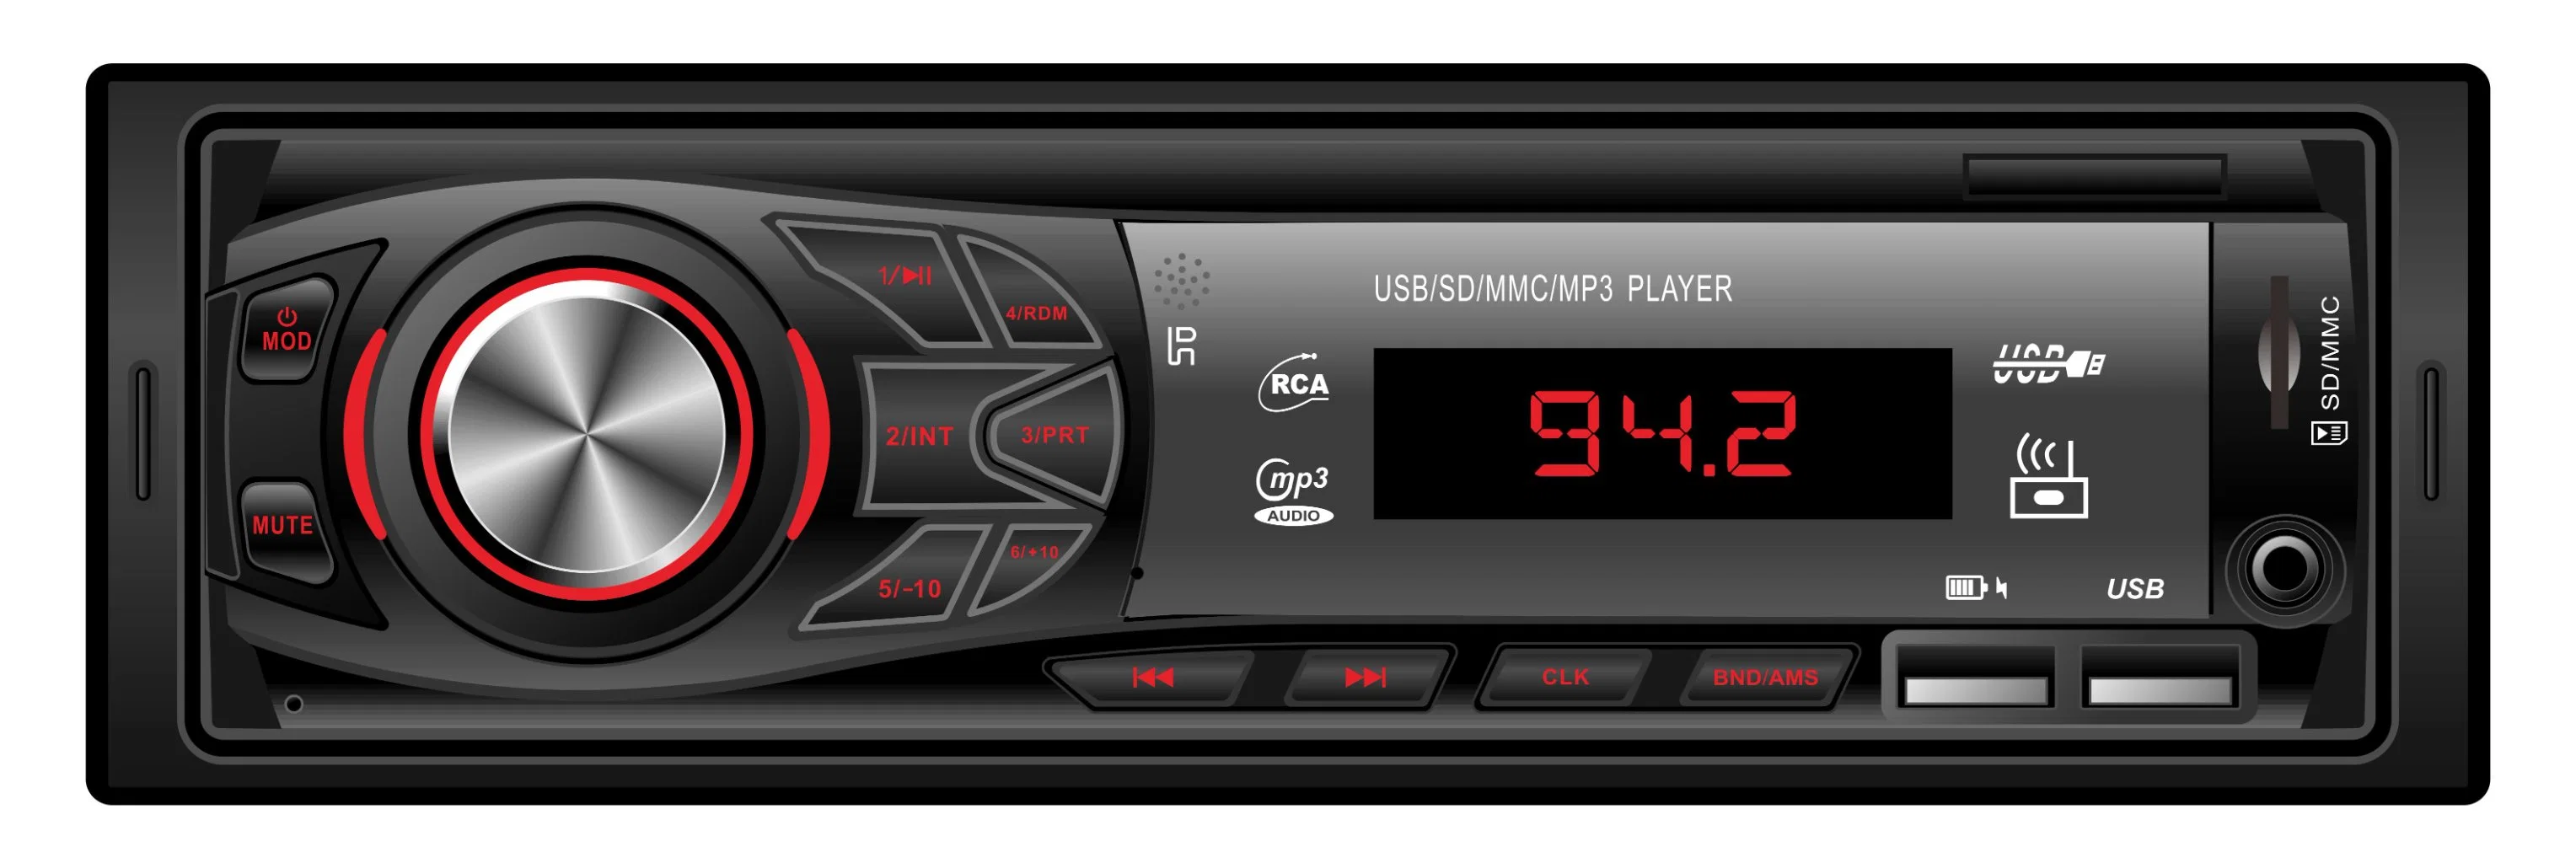 Один разъем DIN Car головного устройства мультимедиа в формате MP3 плеер